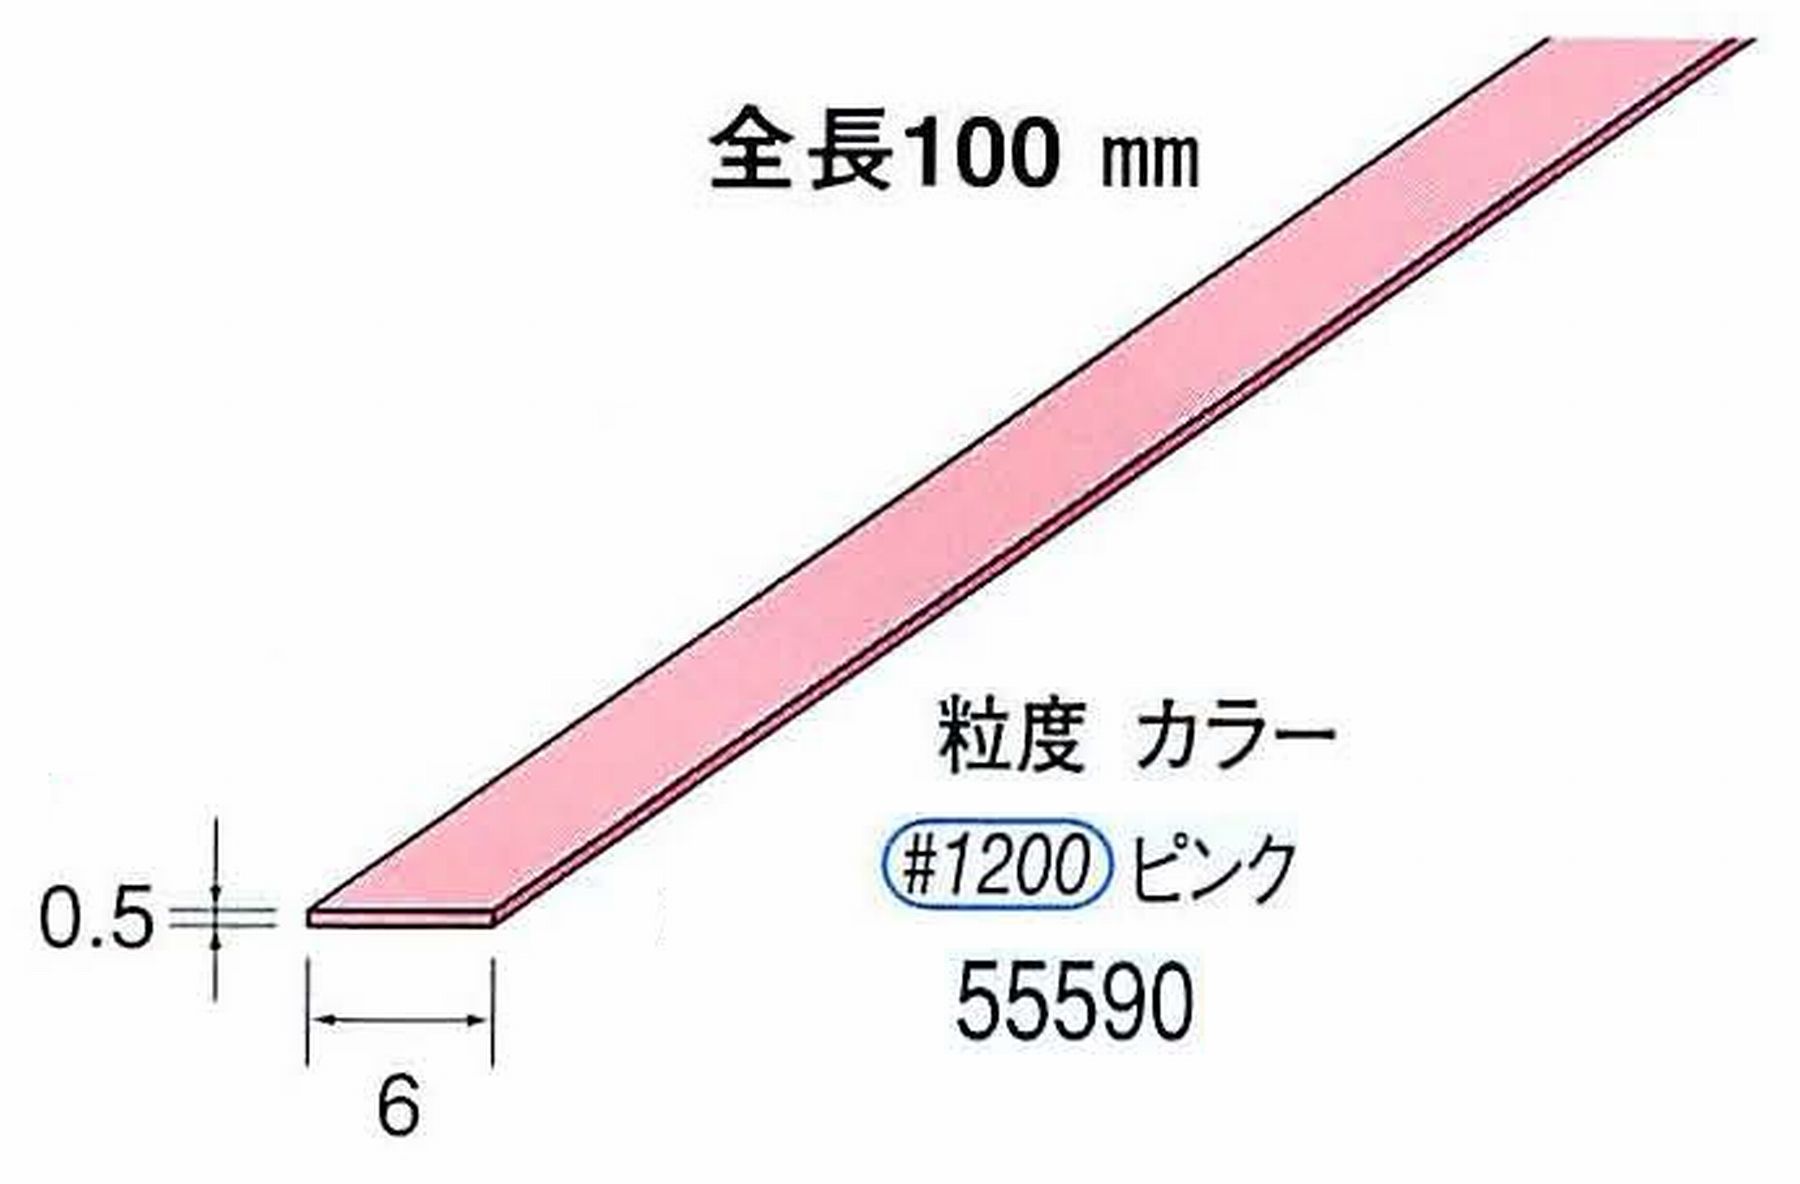 ナカニシ/NAKANISHI セラファイバー砥石 全長100mm ピンク 55590